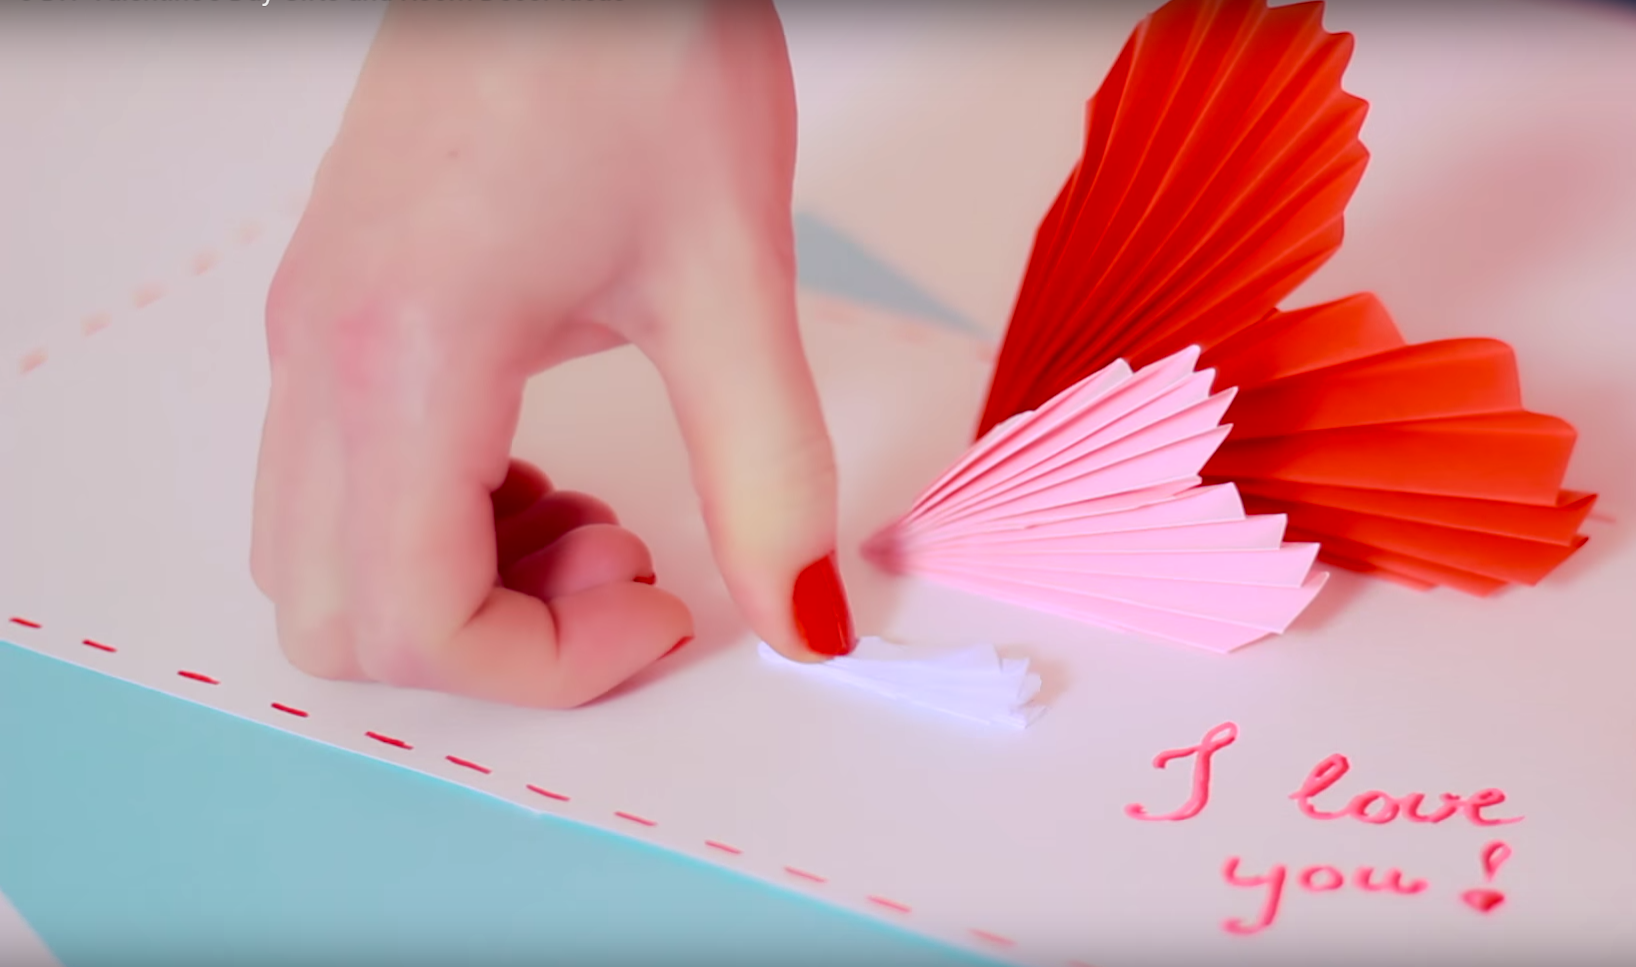 San Valentino, 5 decori romantici fai da te col video tutorial semplice